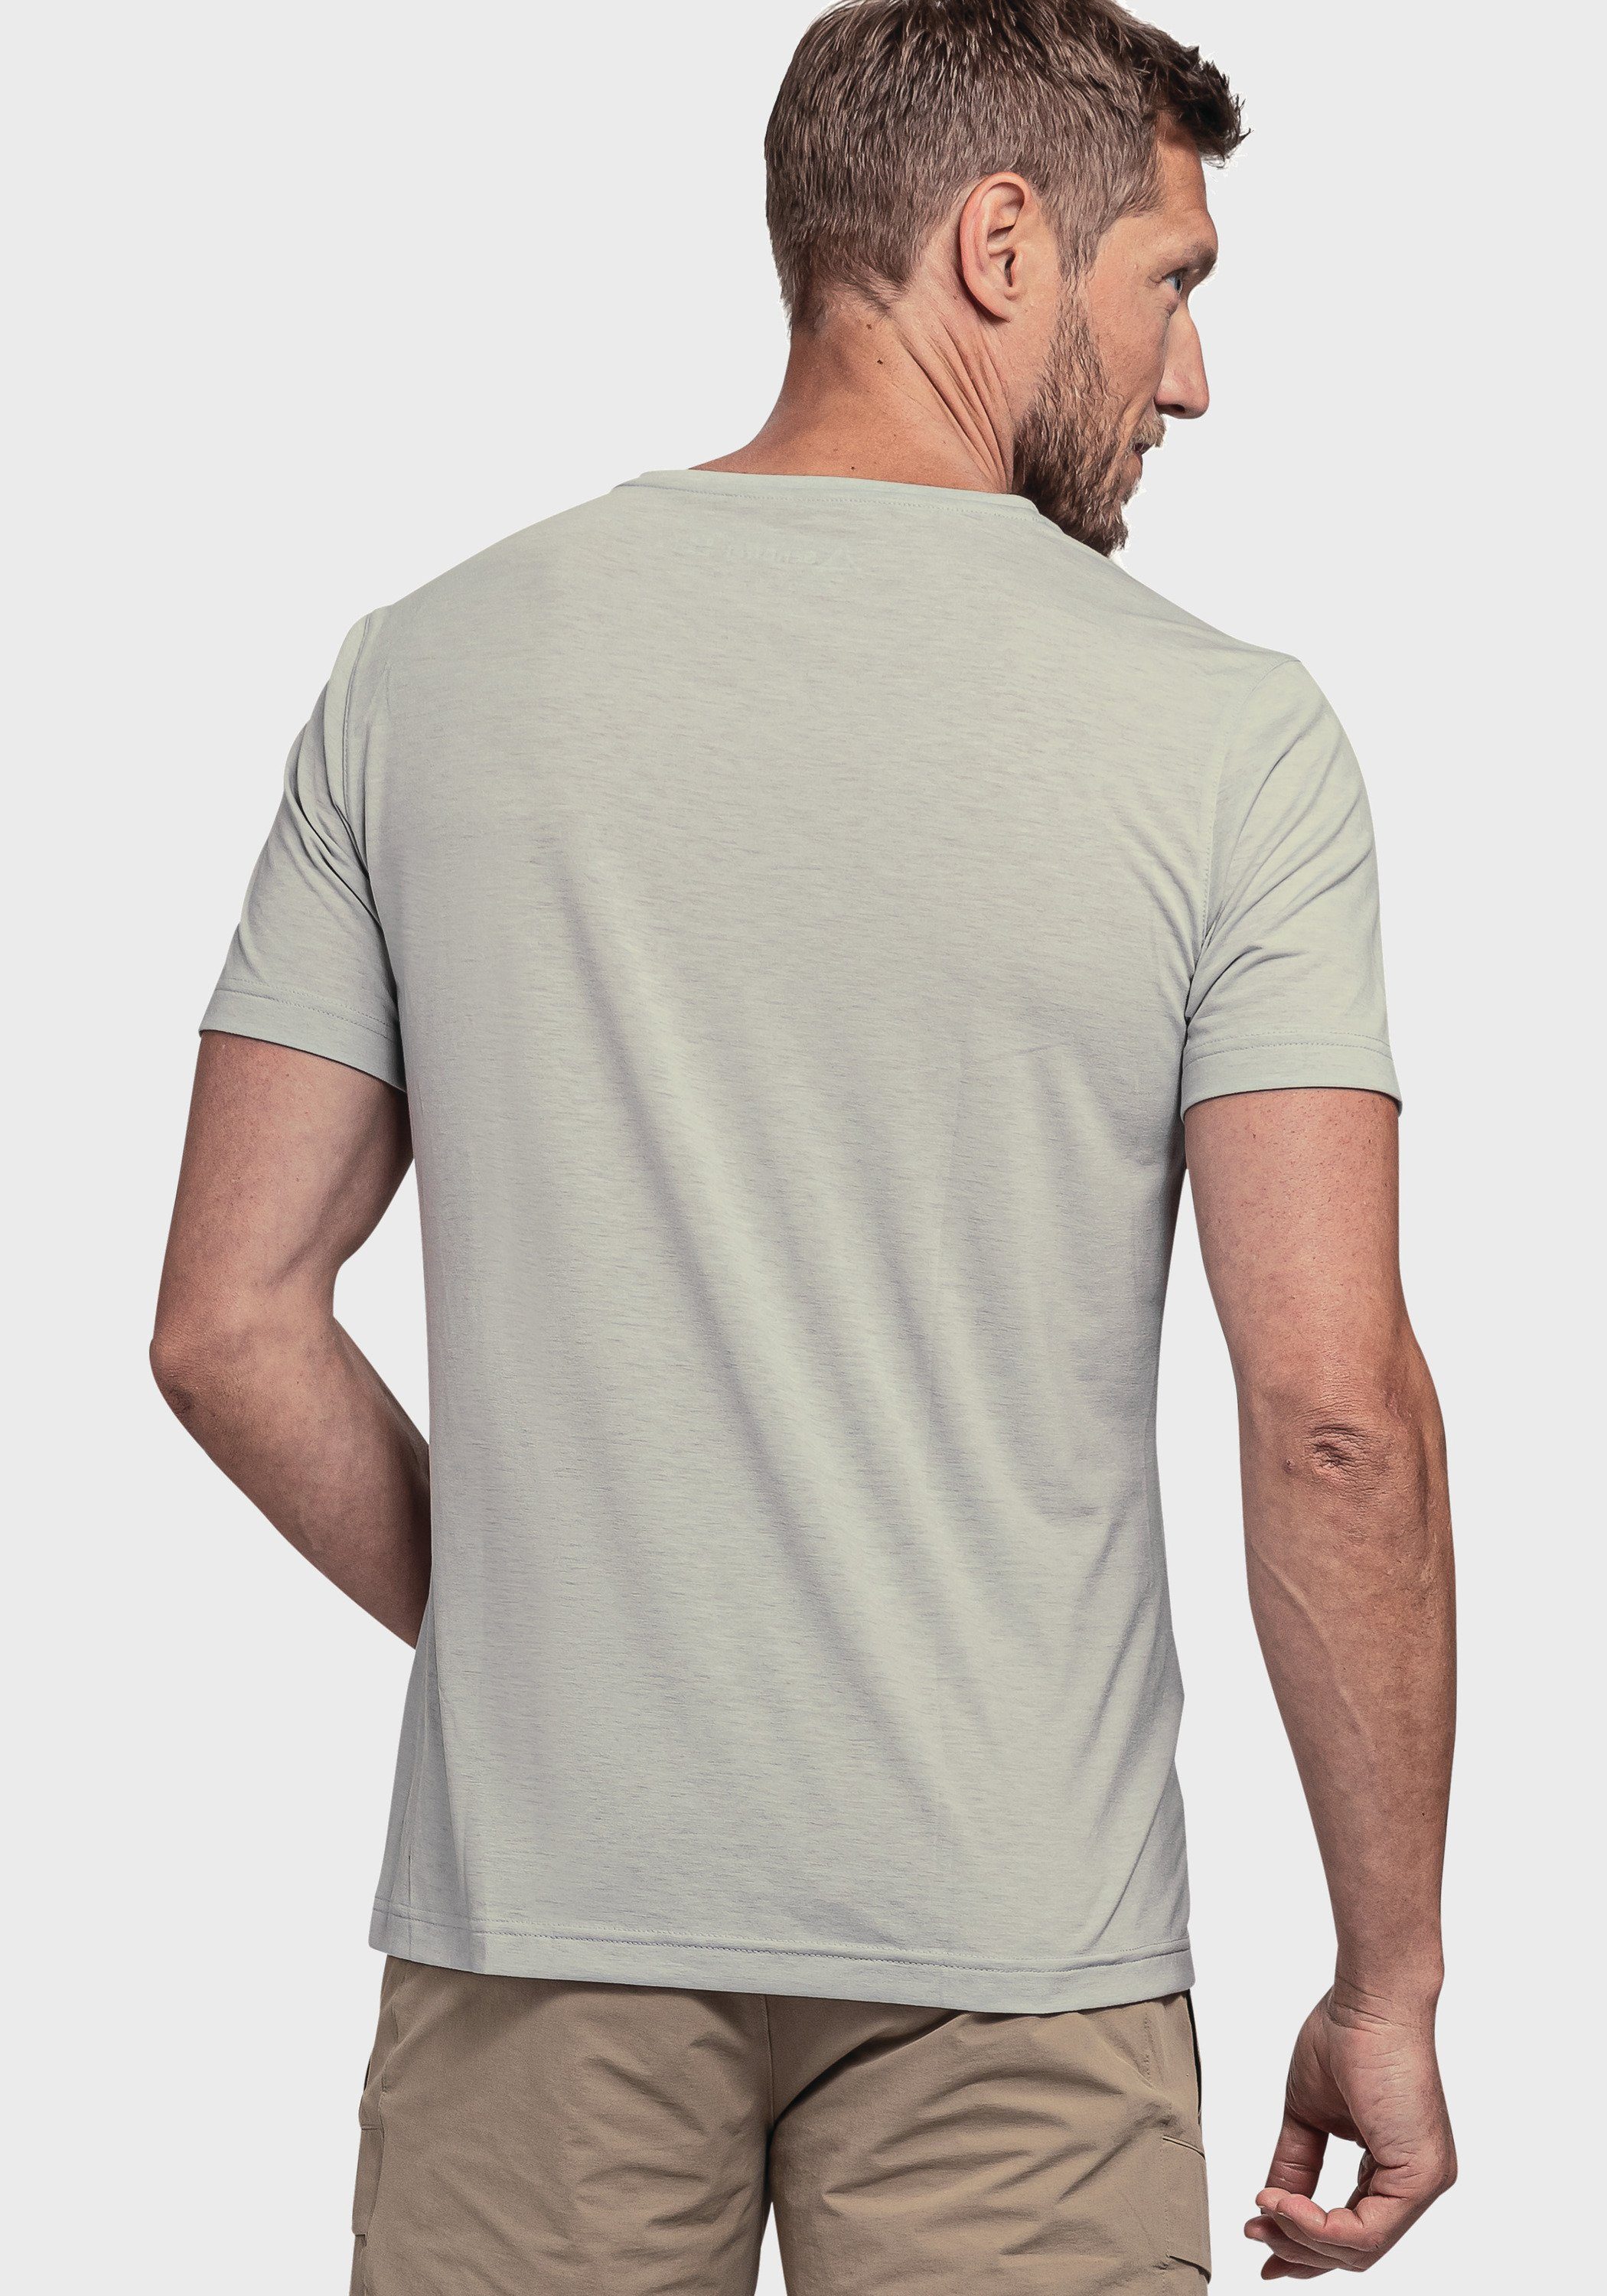 Schöffel Functioneel shirt T Shirt Ramseck M